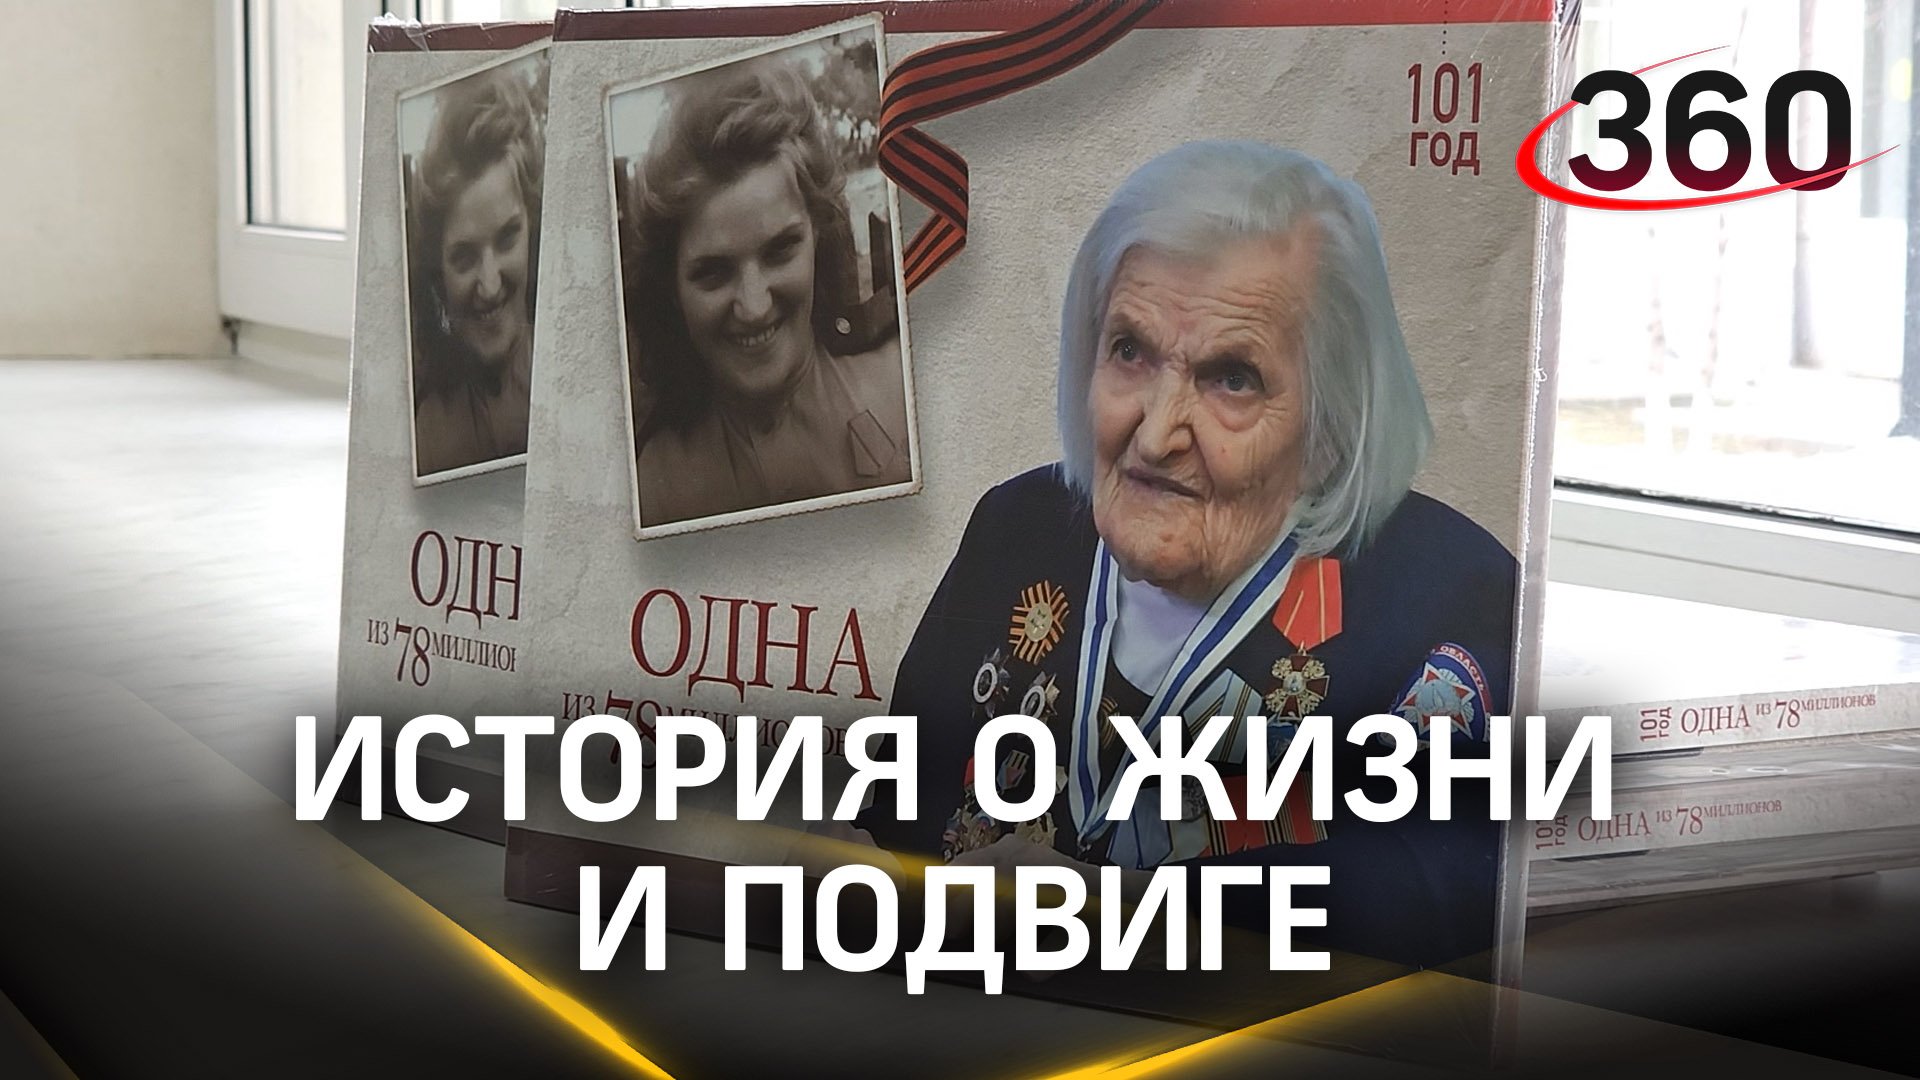 История о жизни и подвиге 101-летней ветерана Великой Отечественной войны изложили в книге